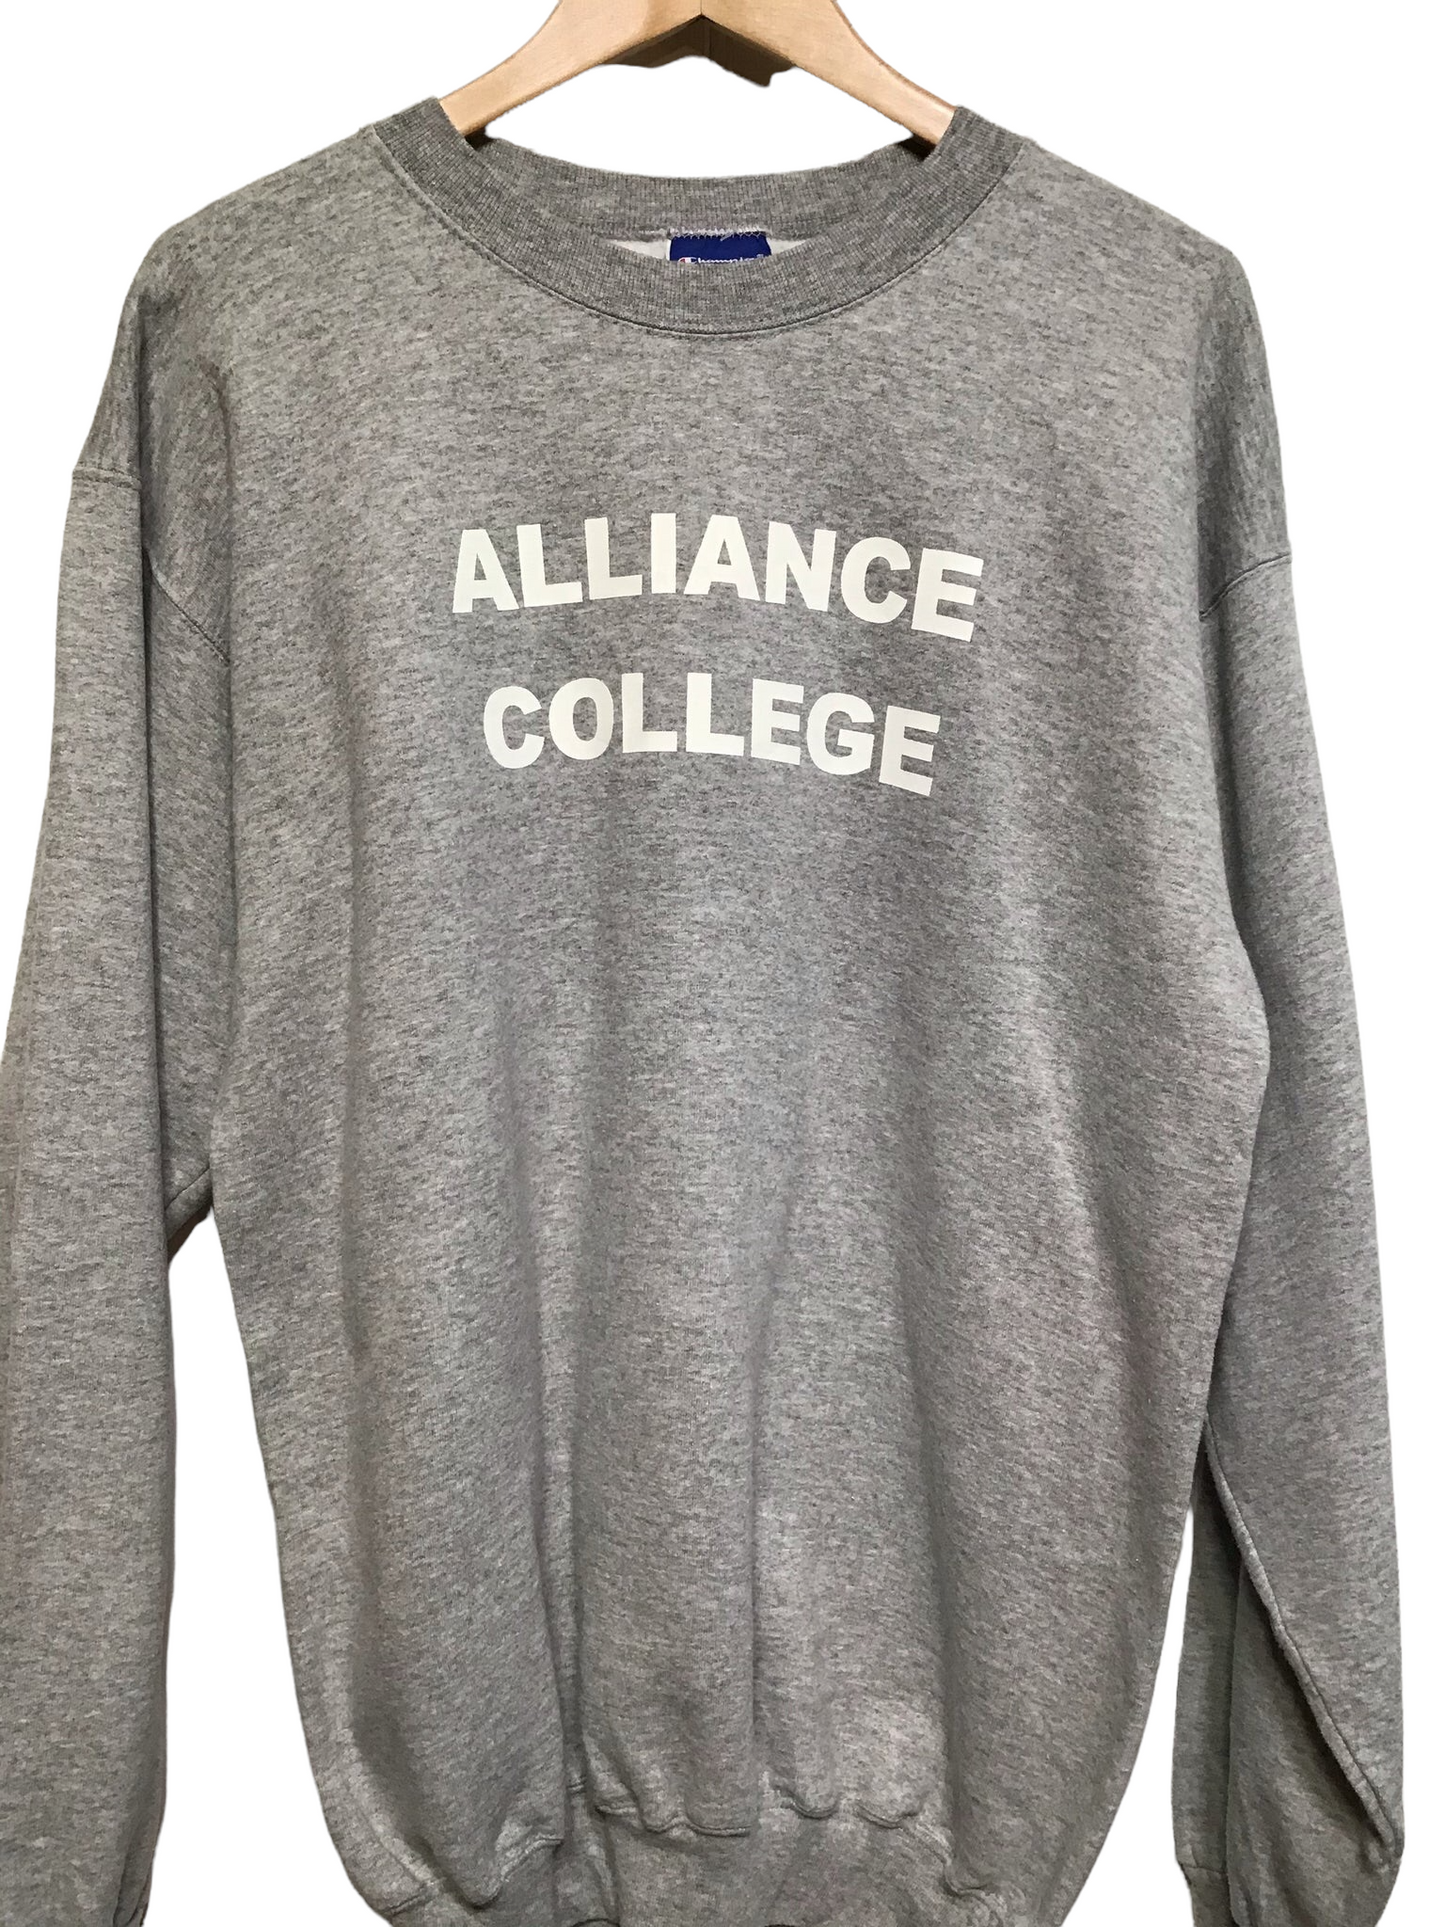 Champion ‘Alliance College’ Sweatshirt (Size L)